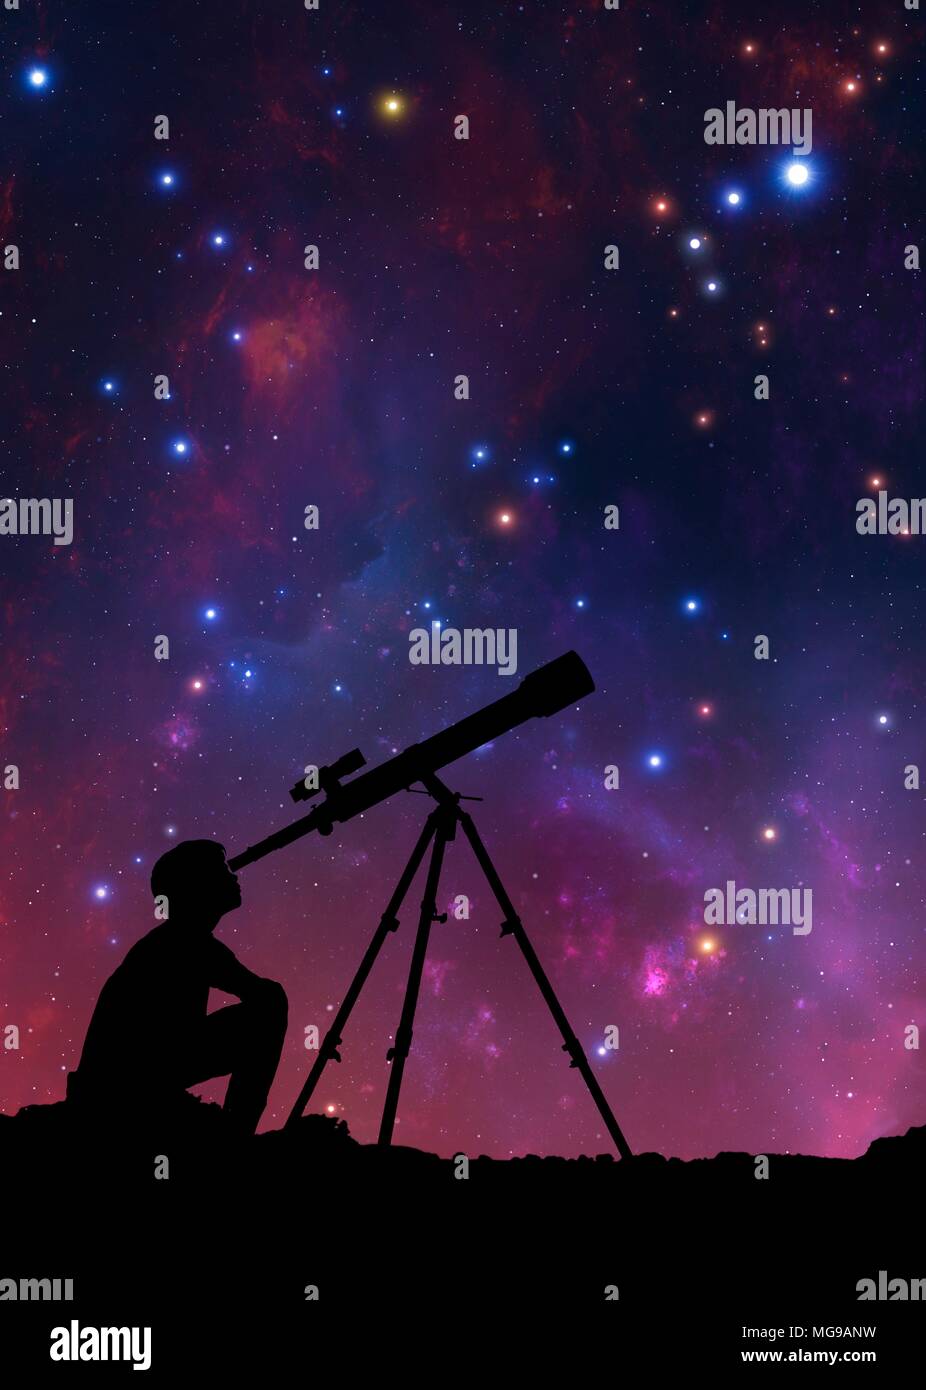 Ilustración de un niño mirando a través de un telescopio, visto en silueta contra las nubes estelares de la Vía Láctea. El muchacho es utilizando un telescopio de refracci n. Foto de stock